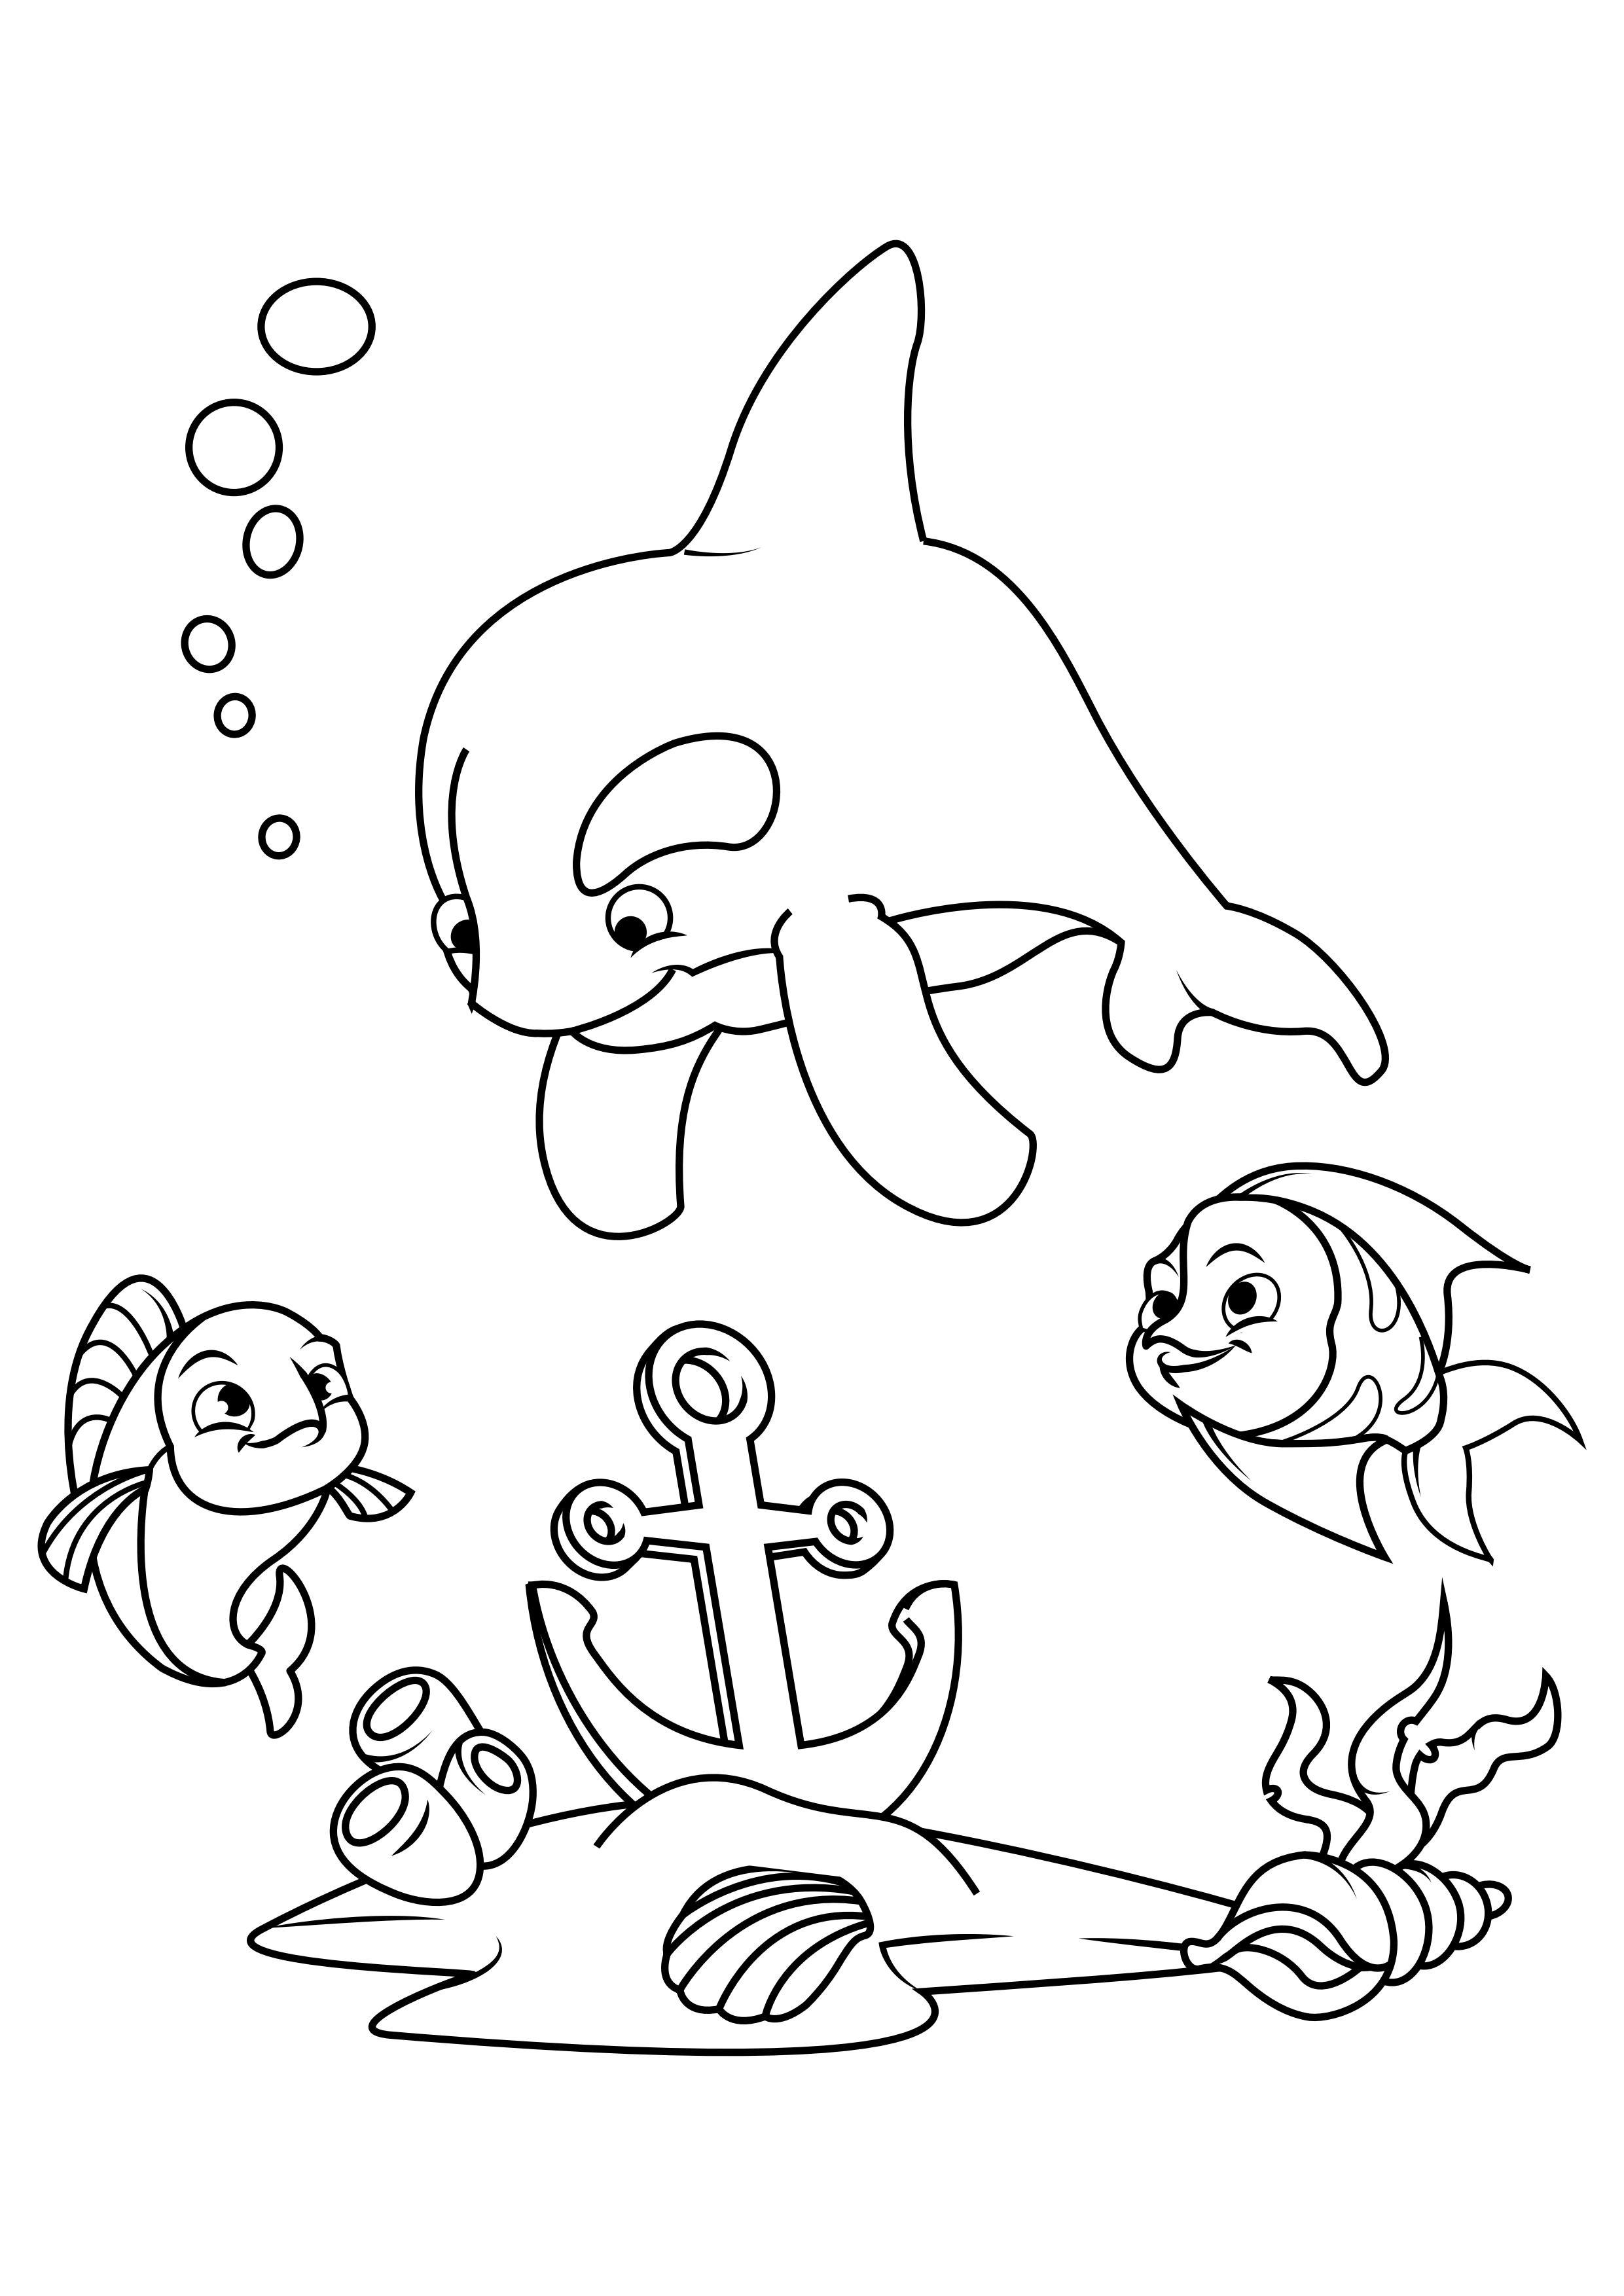 Målarbild delfin och fisk med ankare